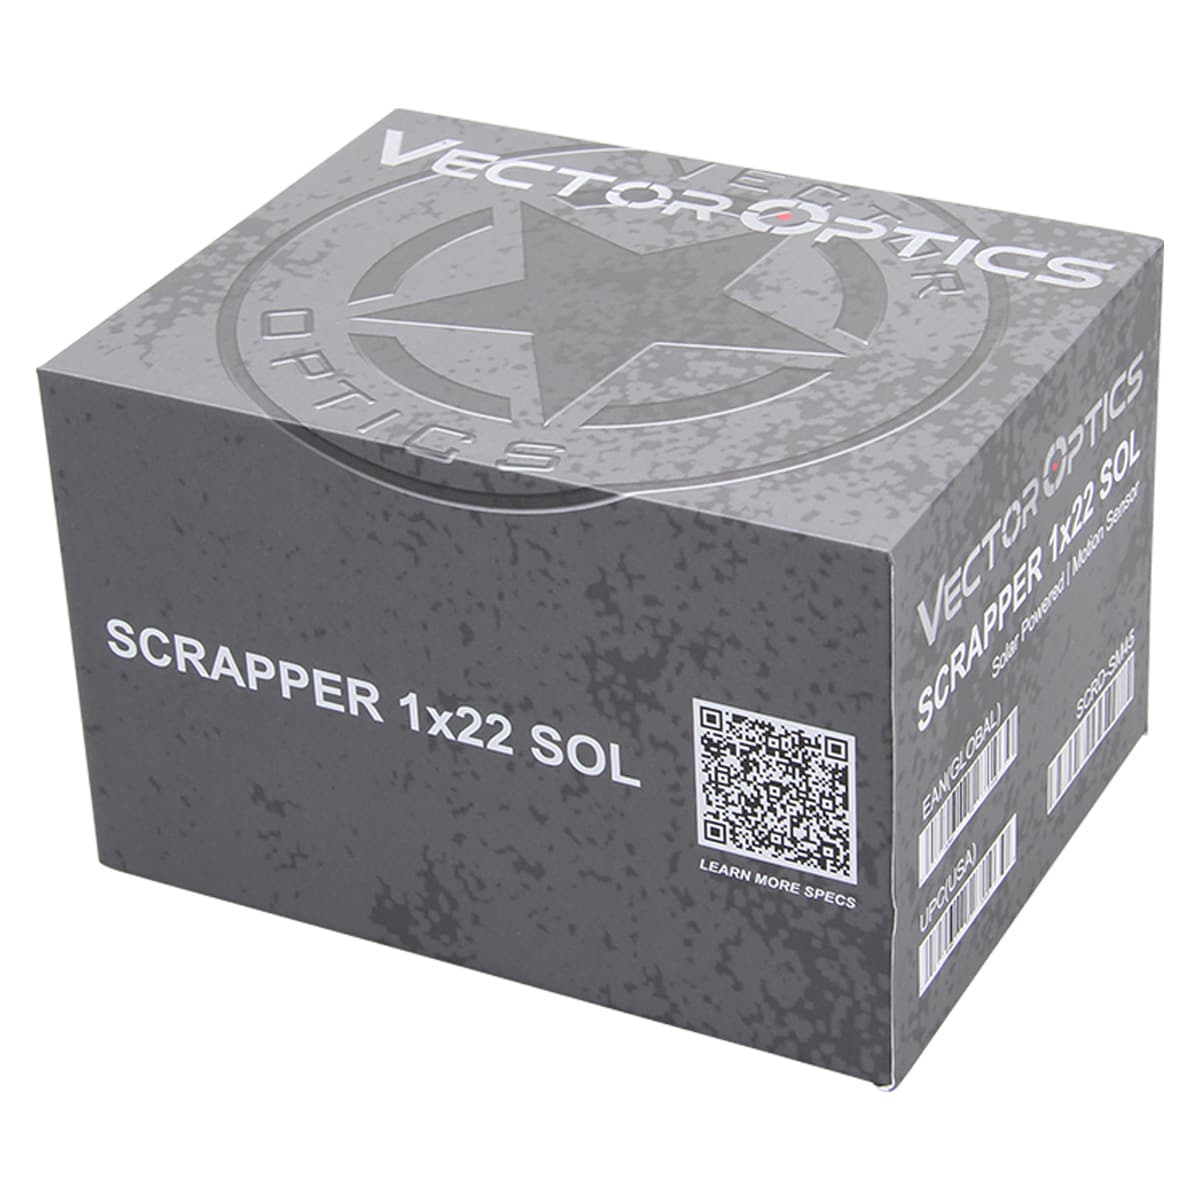 Kolimator Vector Optics Scrapper SOL 1x22 2 MOA